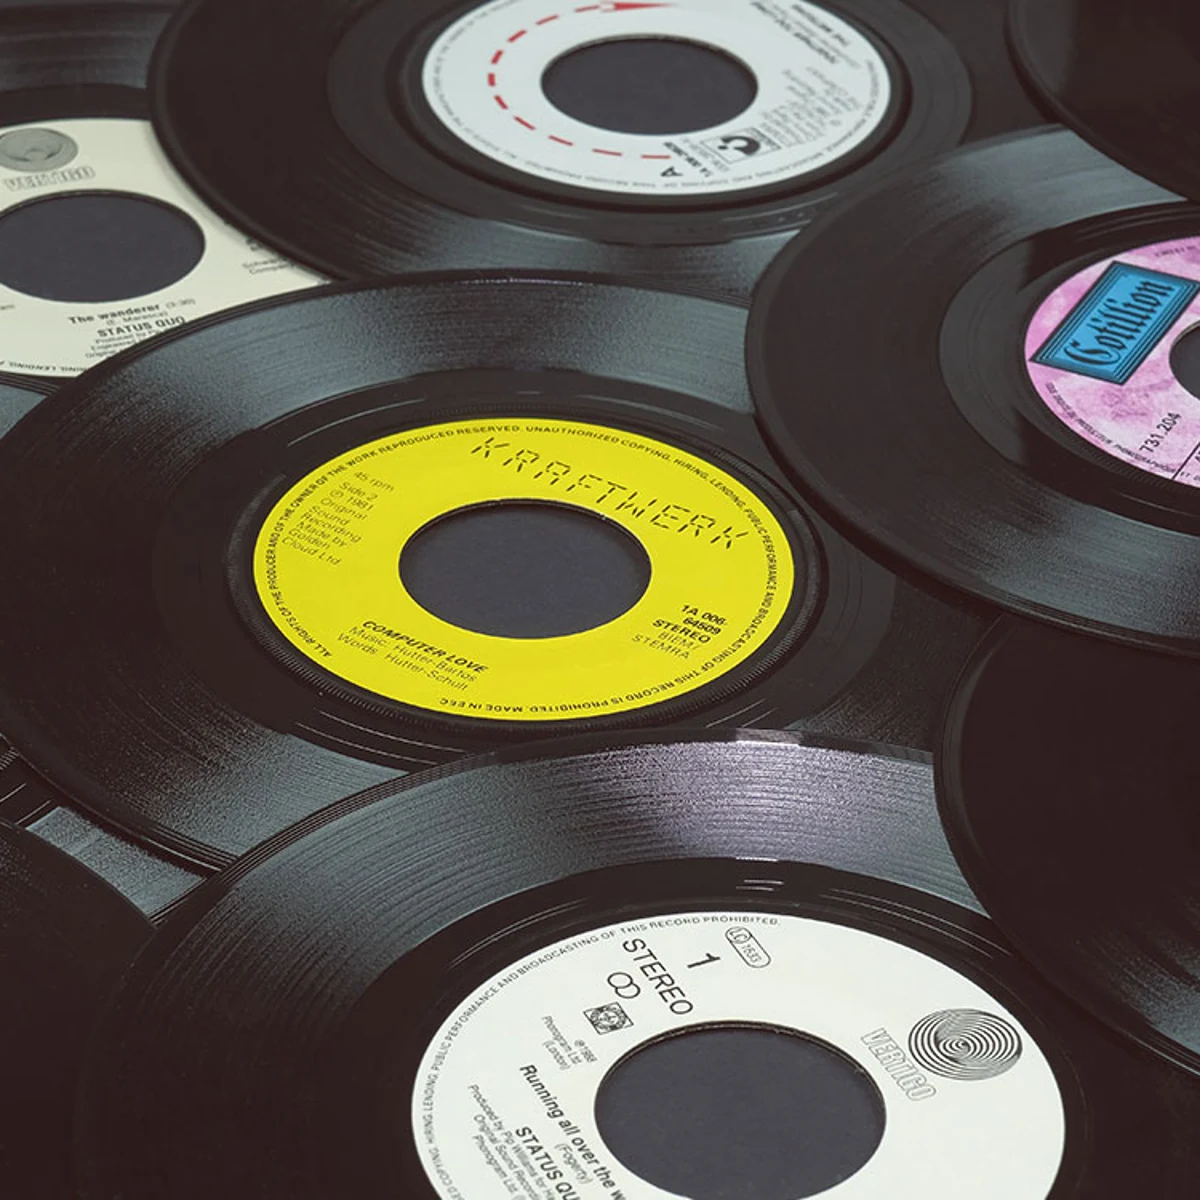 Las ventas de vinilos superan a las de CDs por primera vez en más